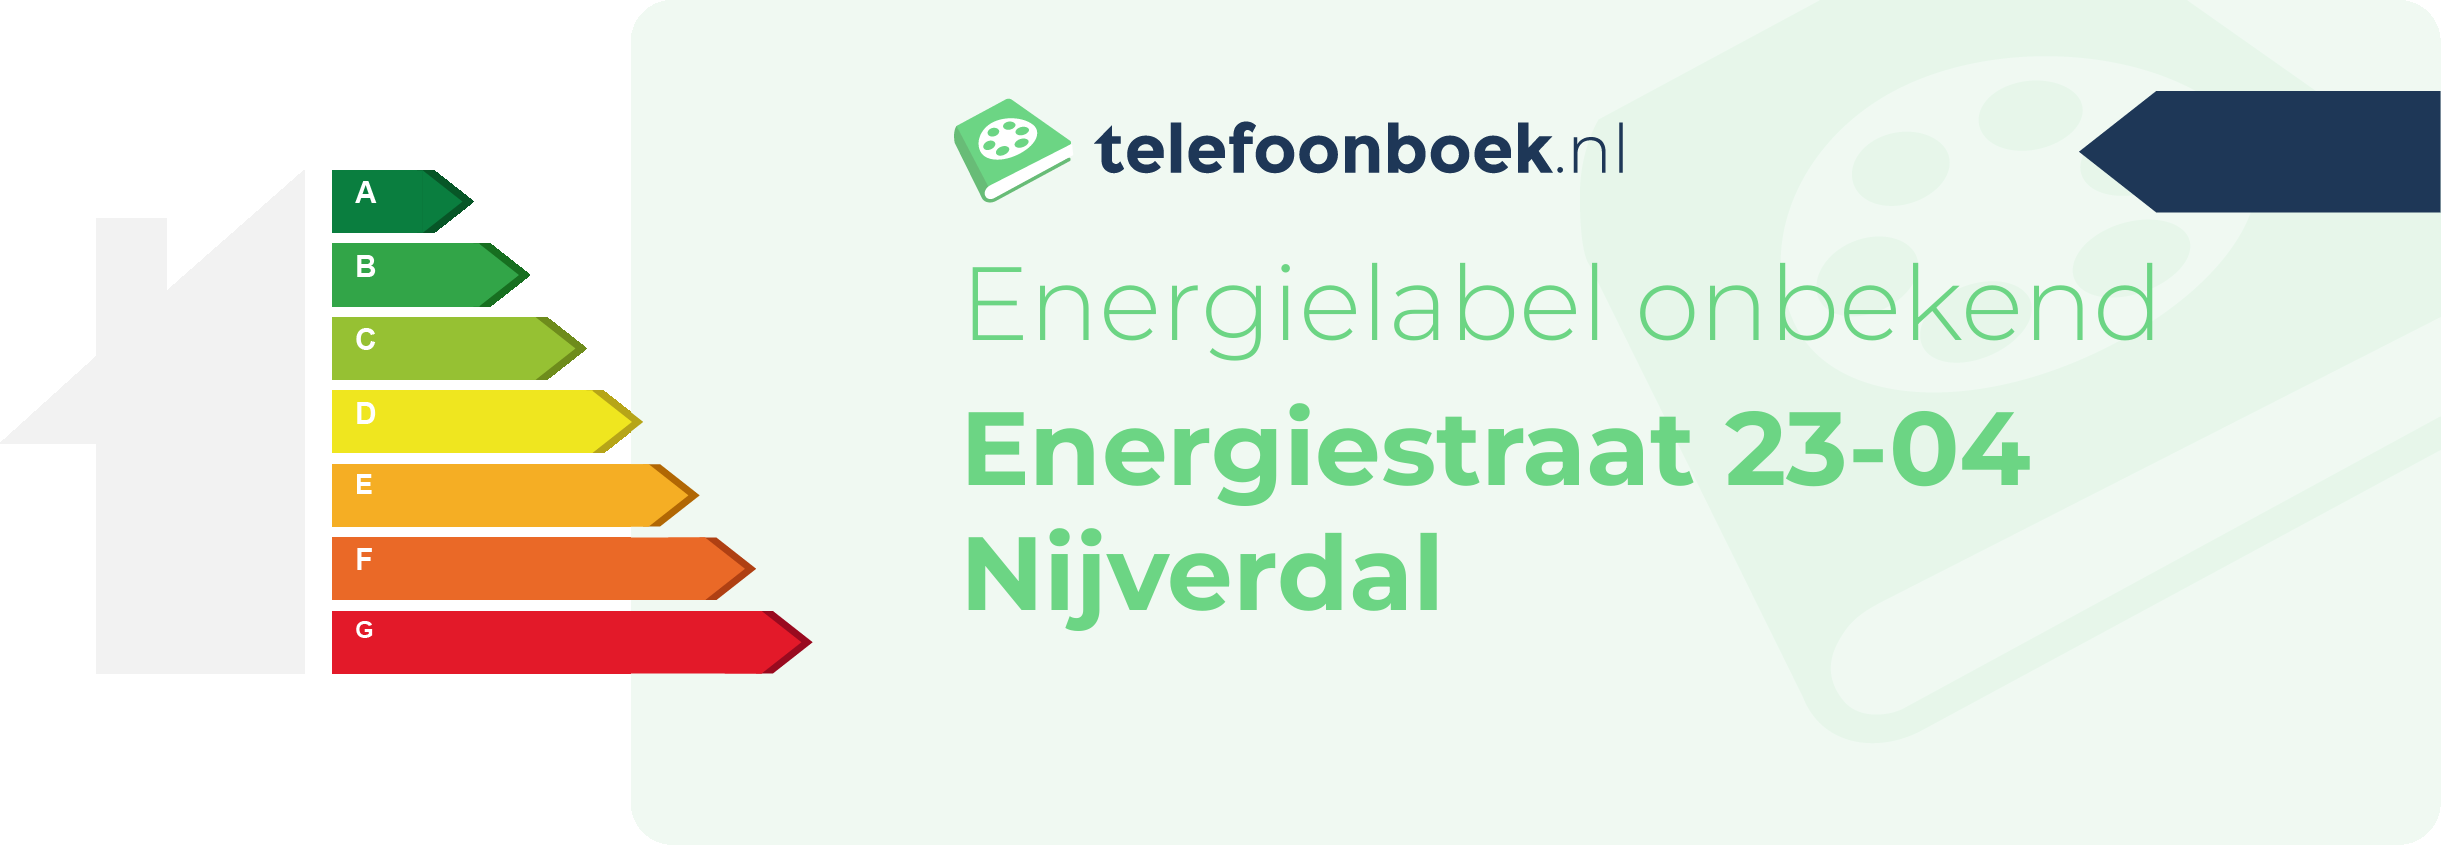 Energielabel Energiestraat 23-04 Nijverdal